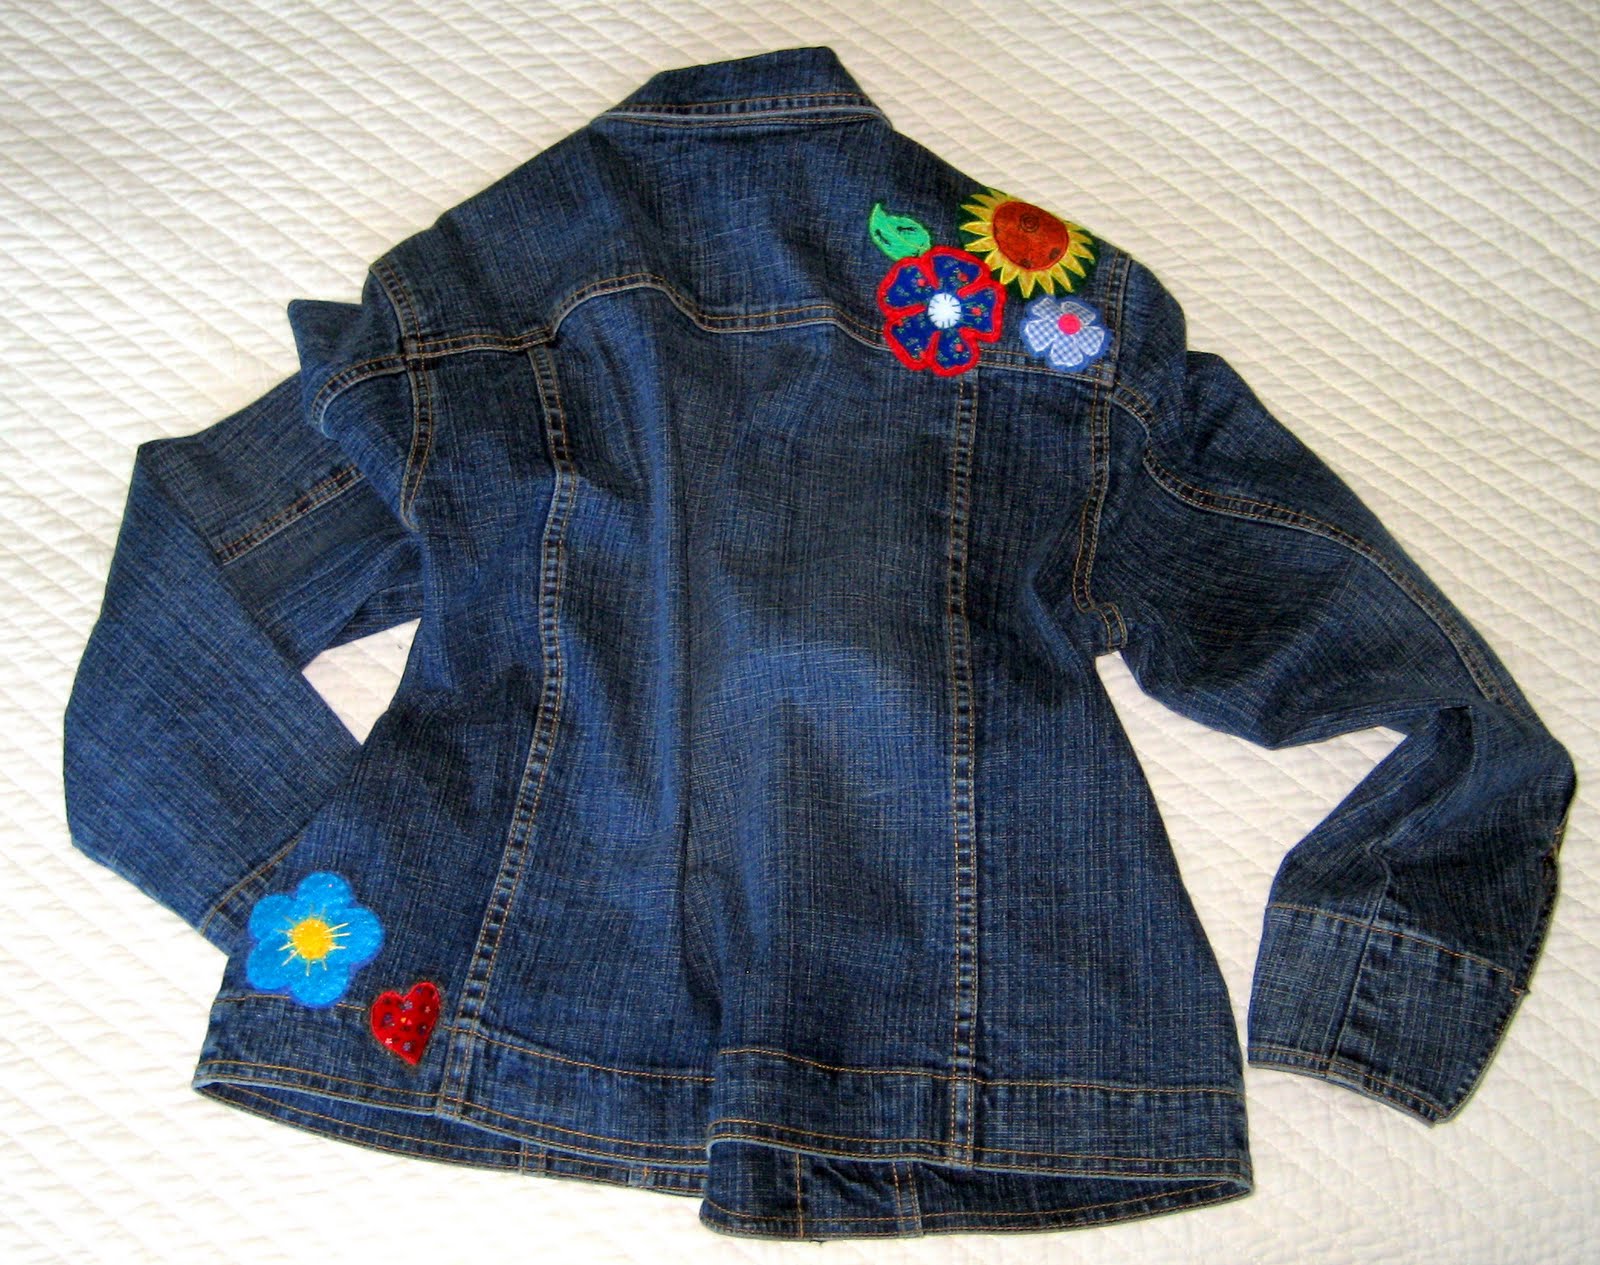 Some Really Neat Stuff: Embellished Denim Jacket